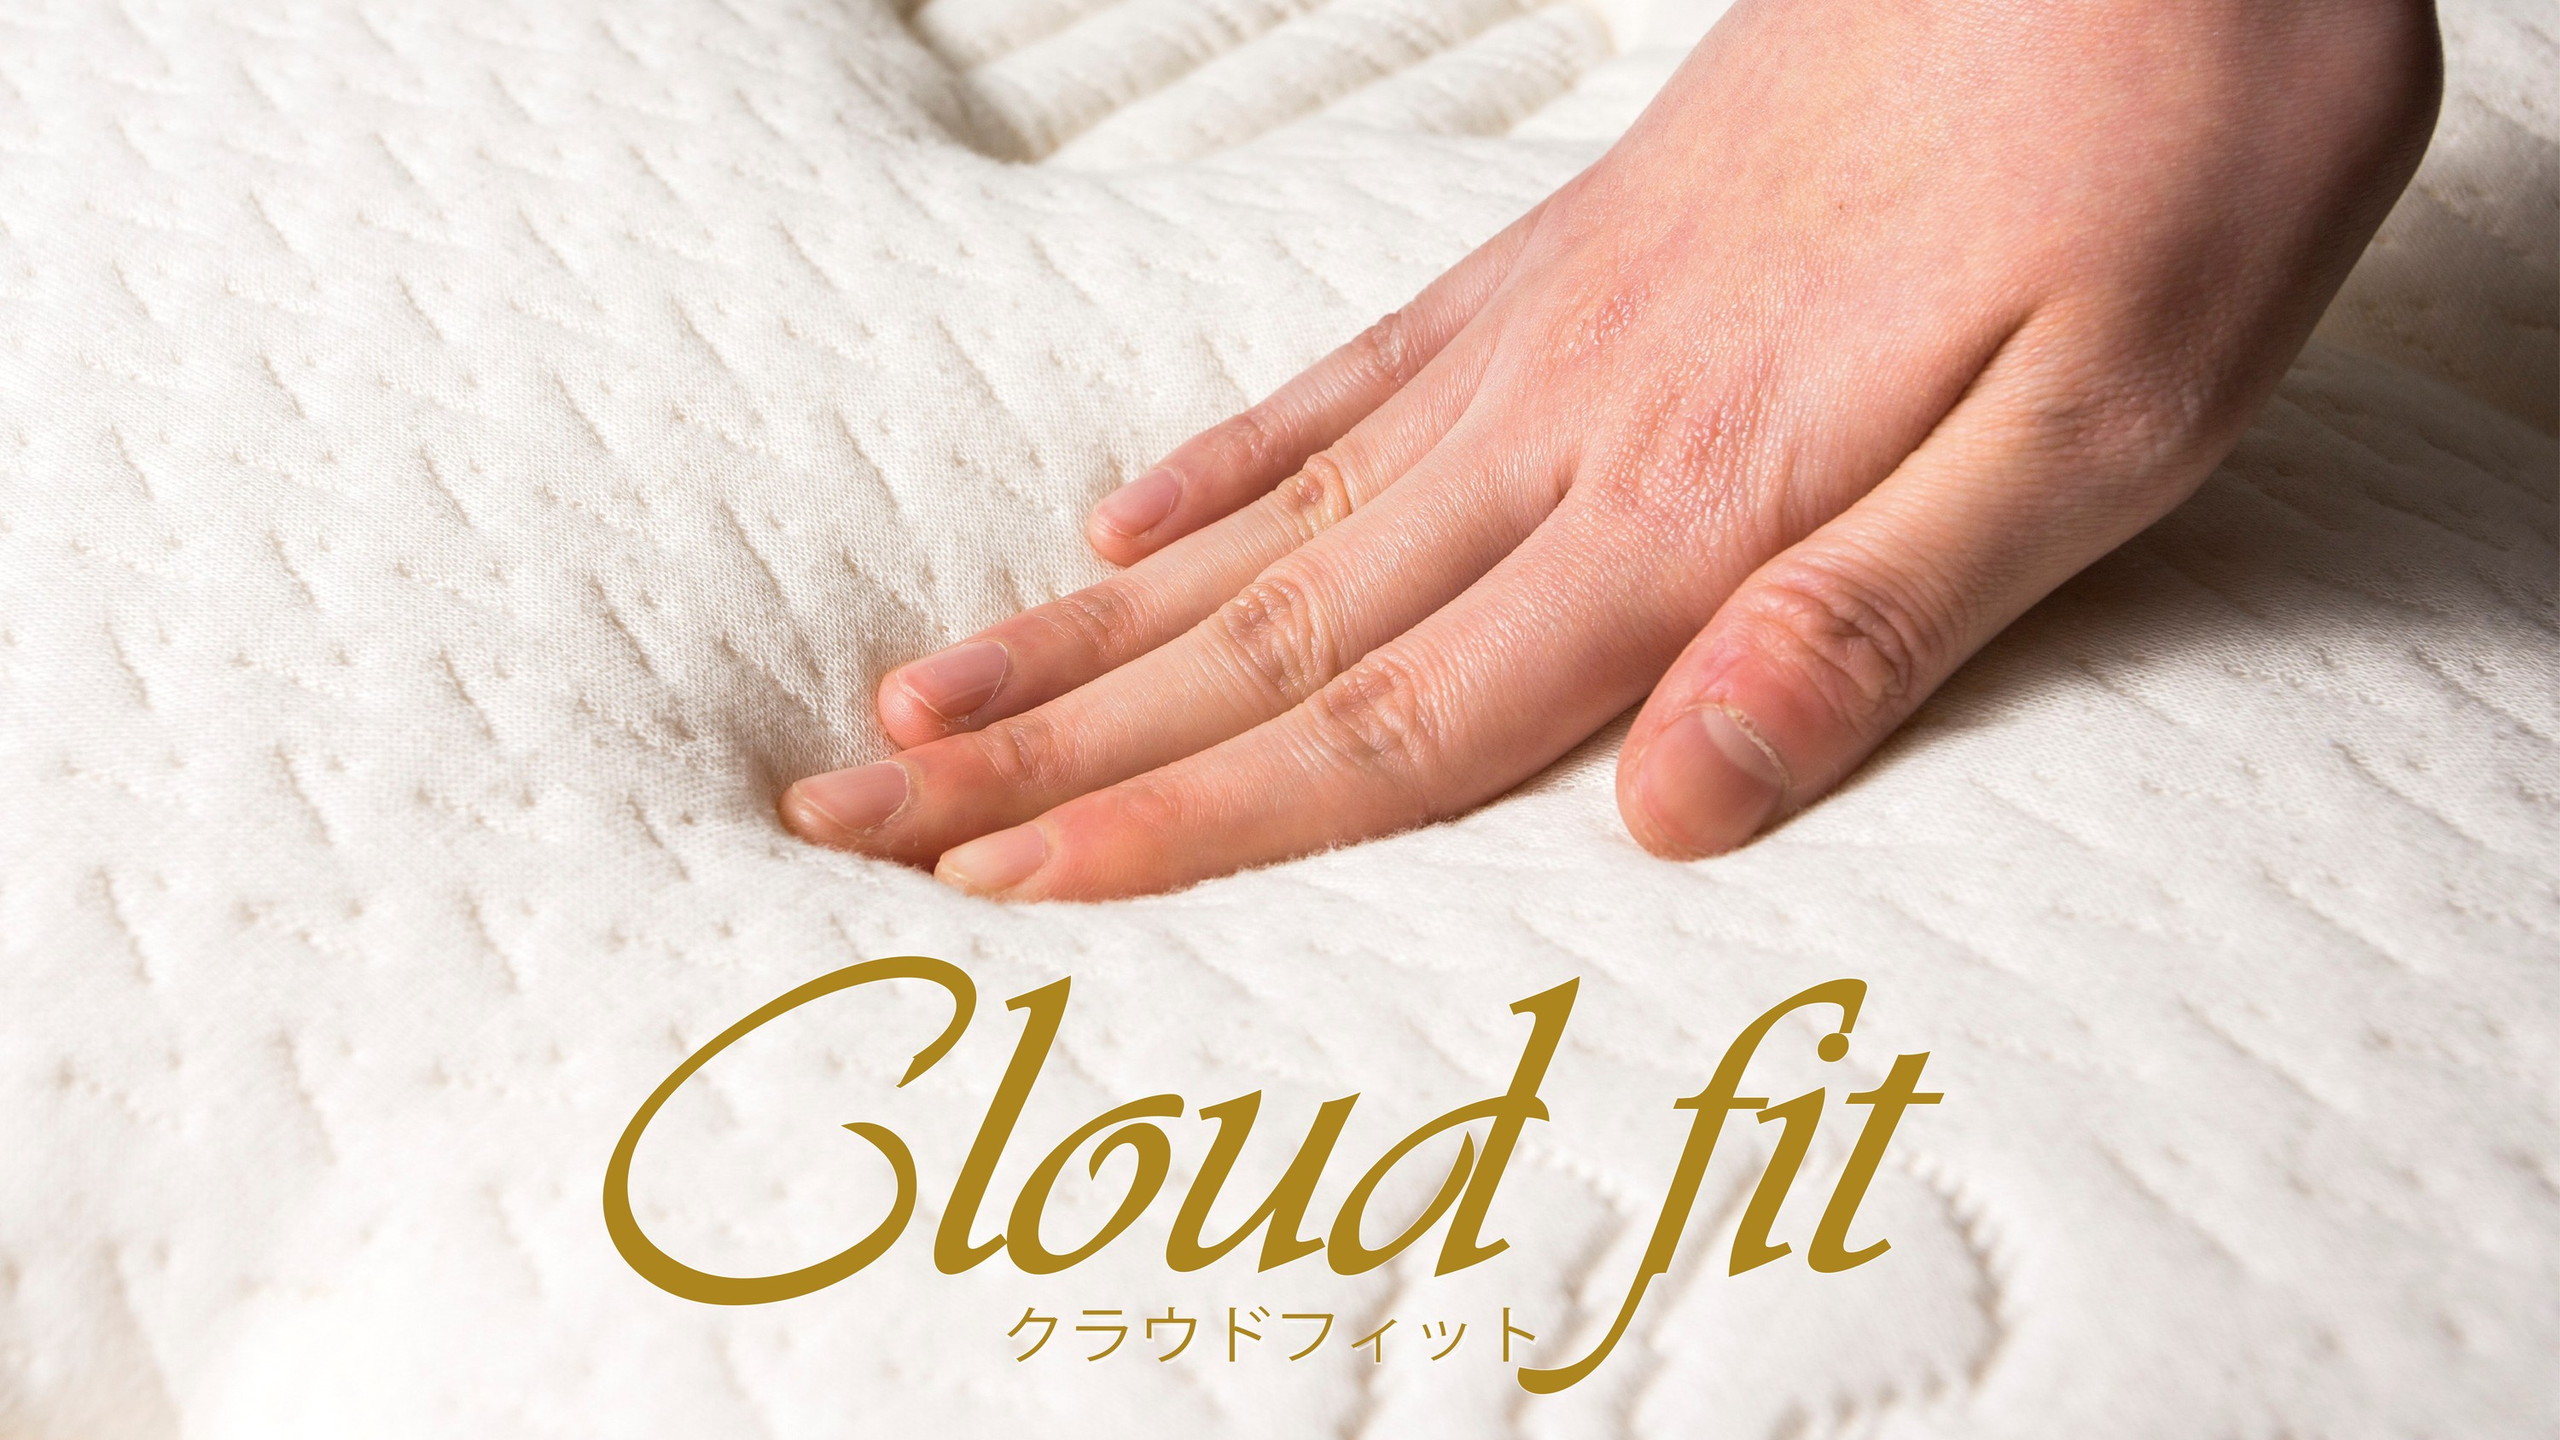 Cloud fit(クラウドフィット)